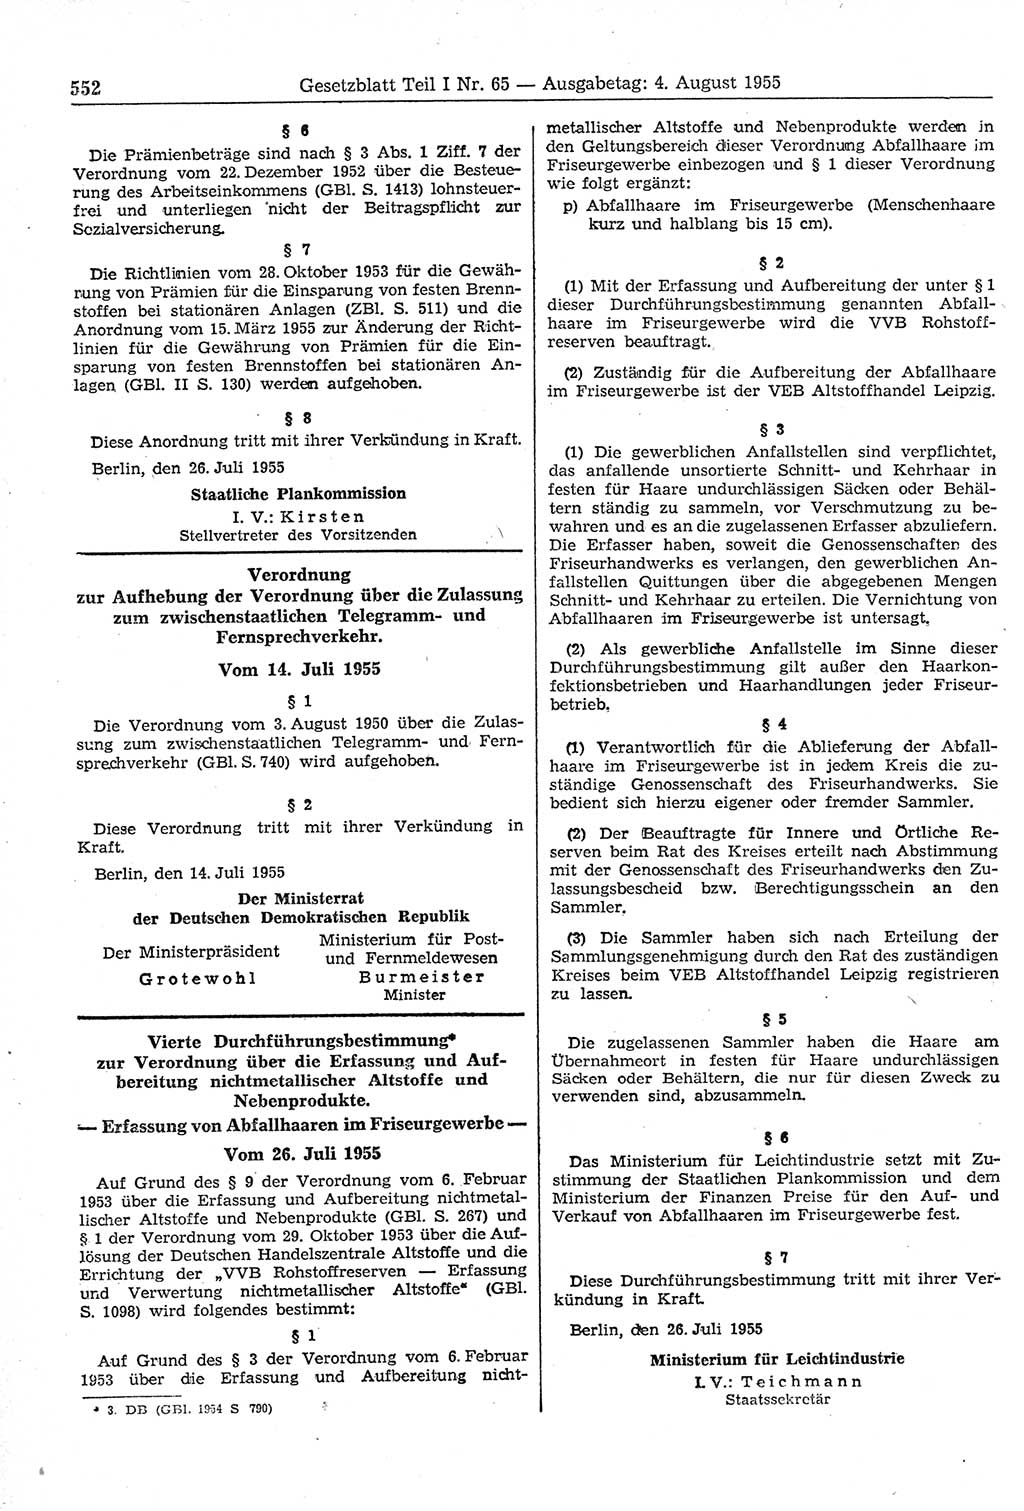 Gesetzblatt (GBl.) der Deutschen Demokratischen Republik (DDR) Teil Ⅰ 1955, Seite 552 (GBl. DDR Ⅰ 1955, S. 552)